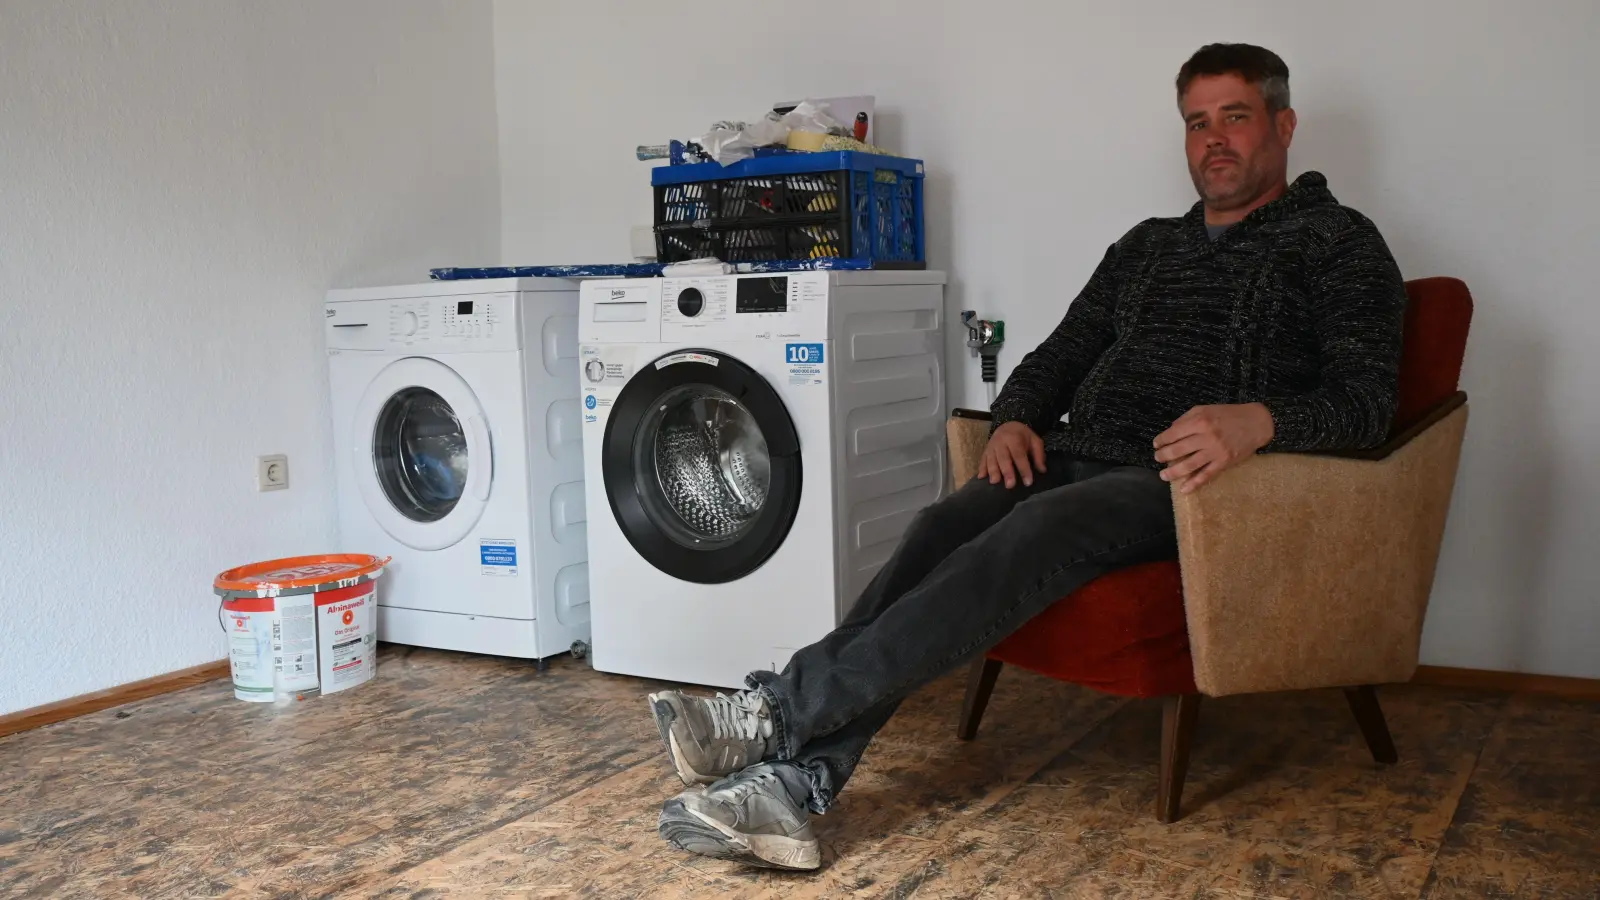 Der Gemeindehelfer Ingo Sips hat den neuen Waschsalon mit auf die Beine gestellt. Das Inventar wird sich von den beiden Waschmaschinen auf zwei Trockner und eine größere Sitzecke erweitern. (Foto: Luca Paul)